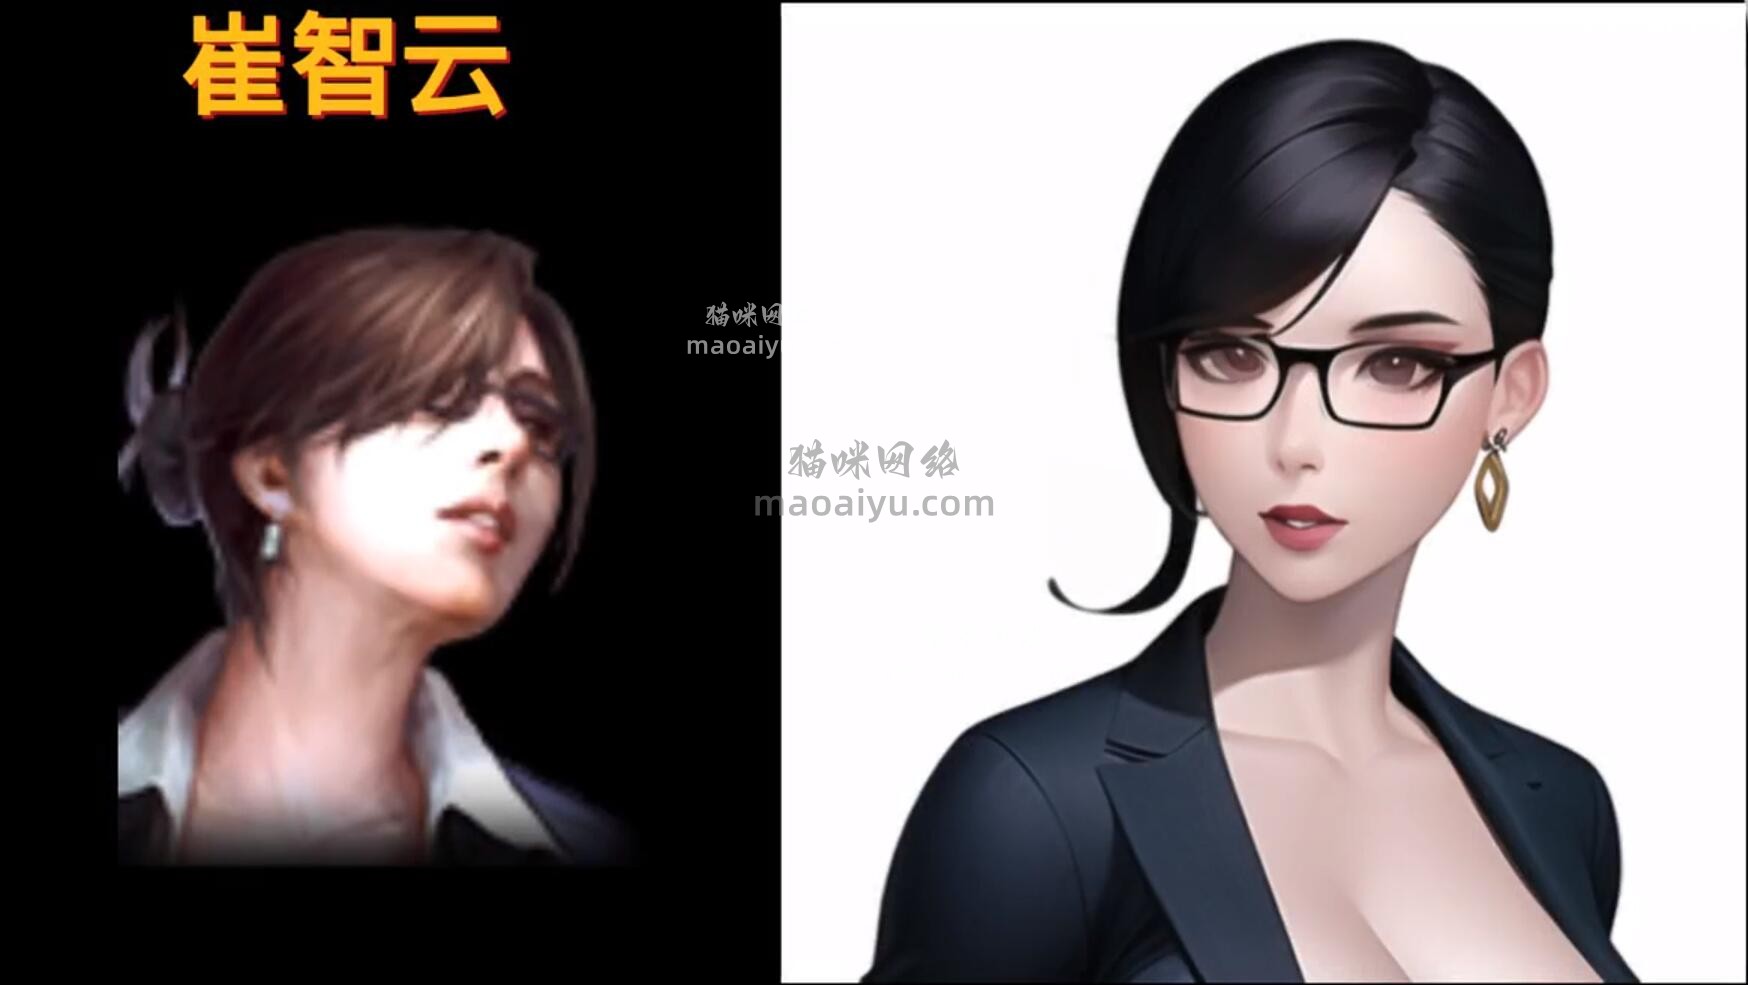 《CSOL》手绘游戏人物角色崔智云-猫咪网络